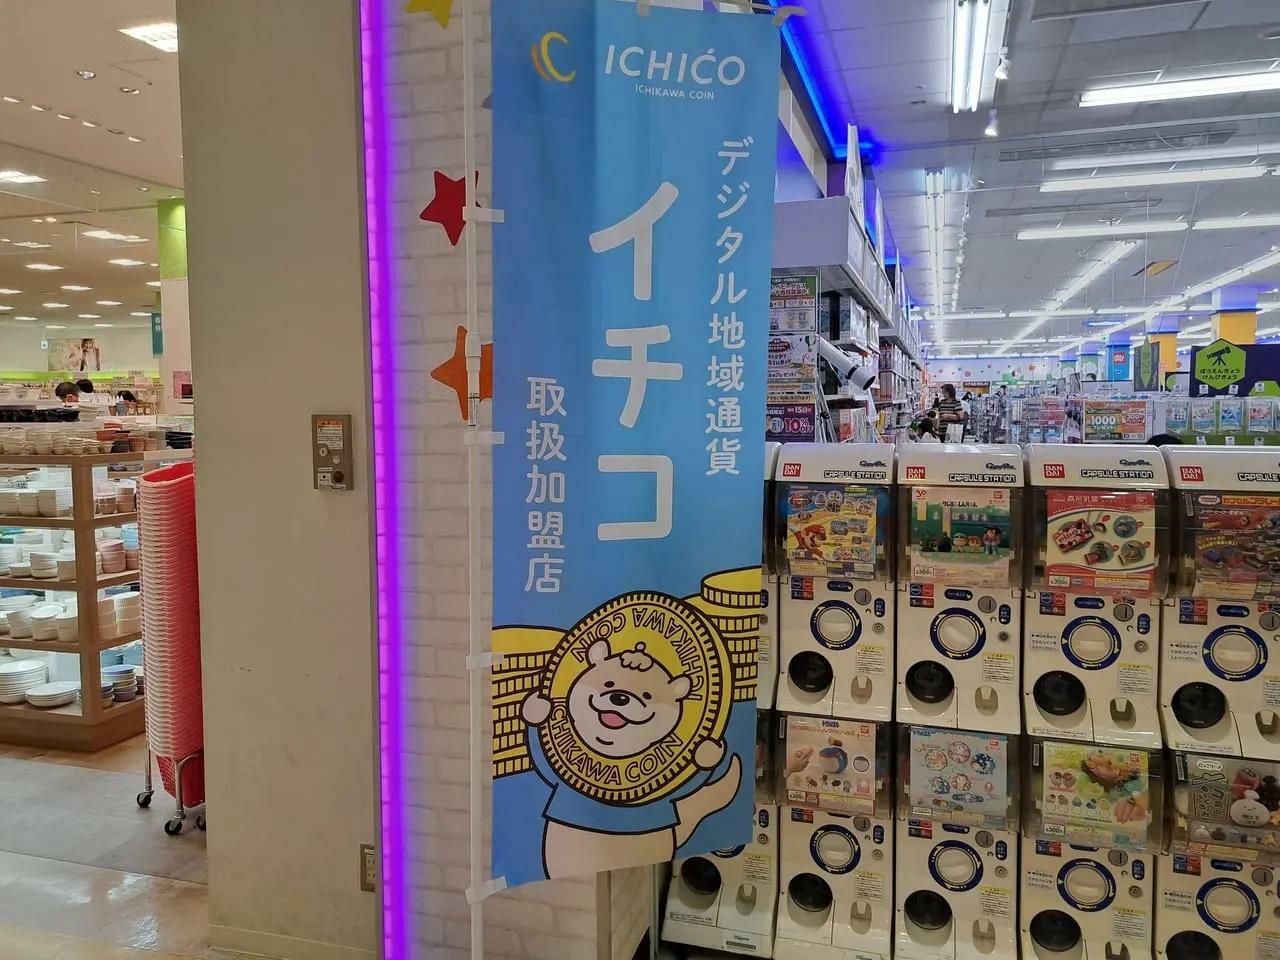 ニッケコルトンプラザ内では多くのお店で「ICHICO（イチコ）」が利用可能です。